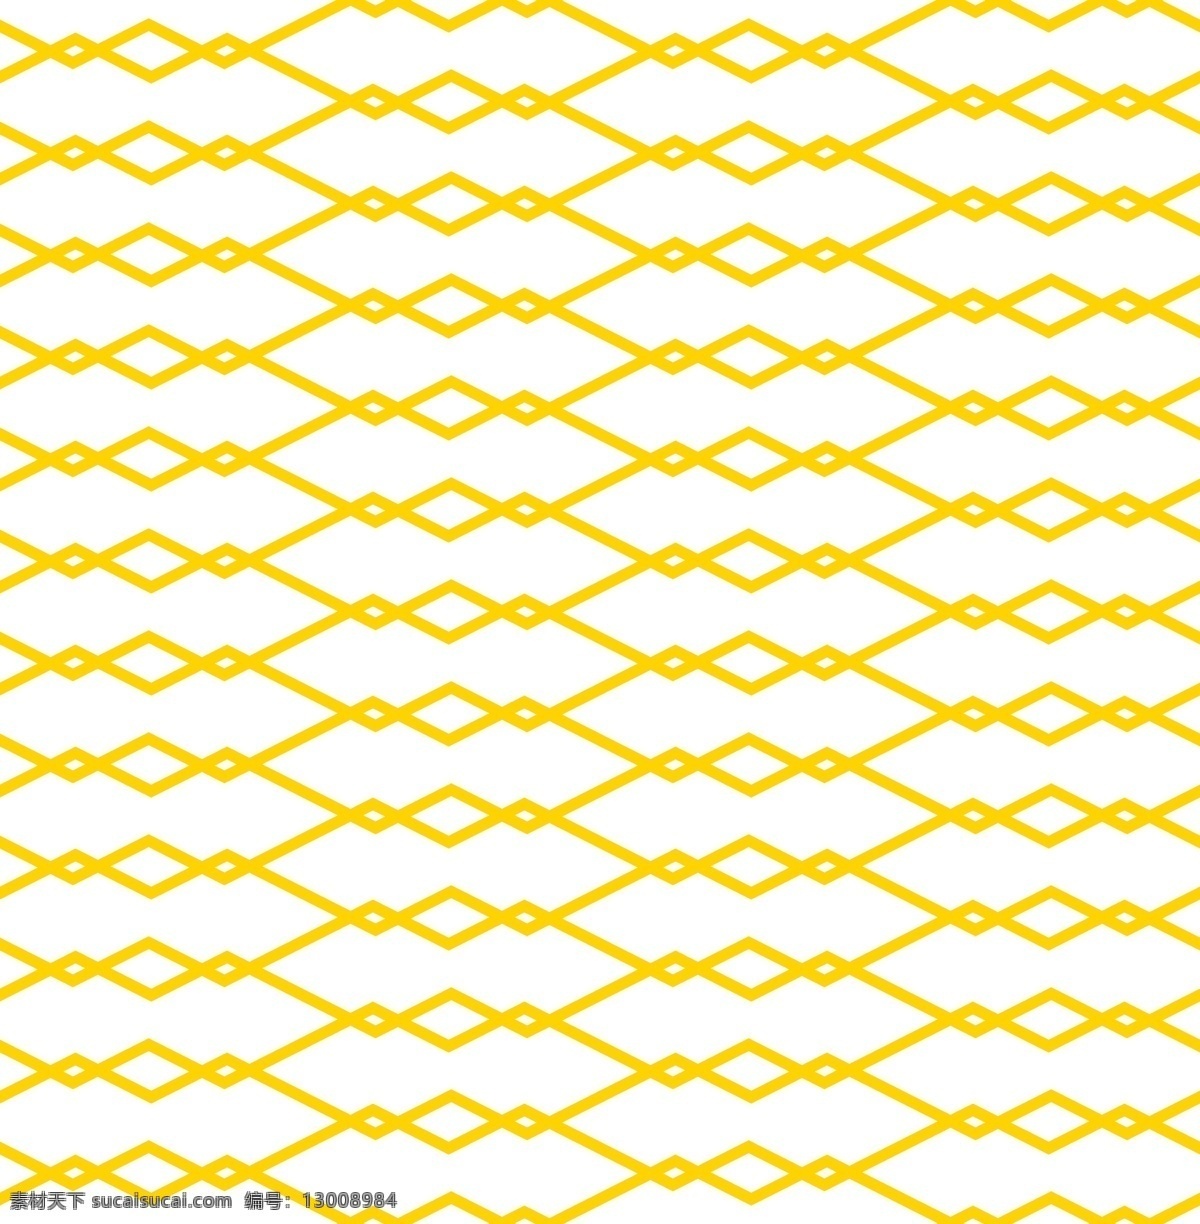 黄色 小 菱形 鱼骨 图案 矢量 背景 卡通 规律 无缝 四方 连续 平铺 几何线条